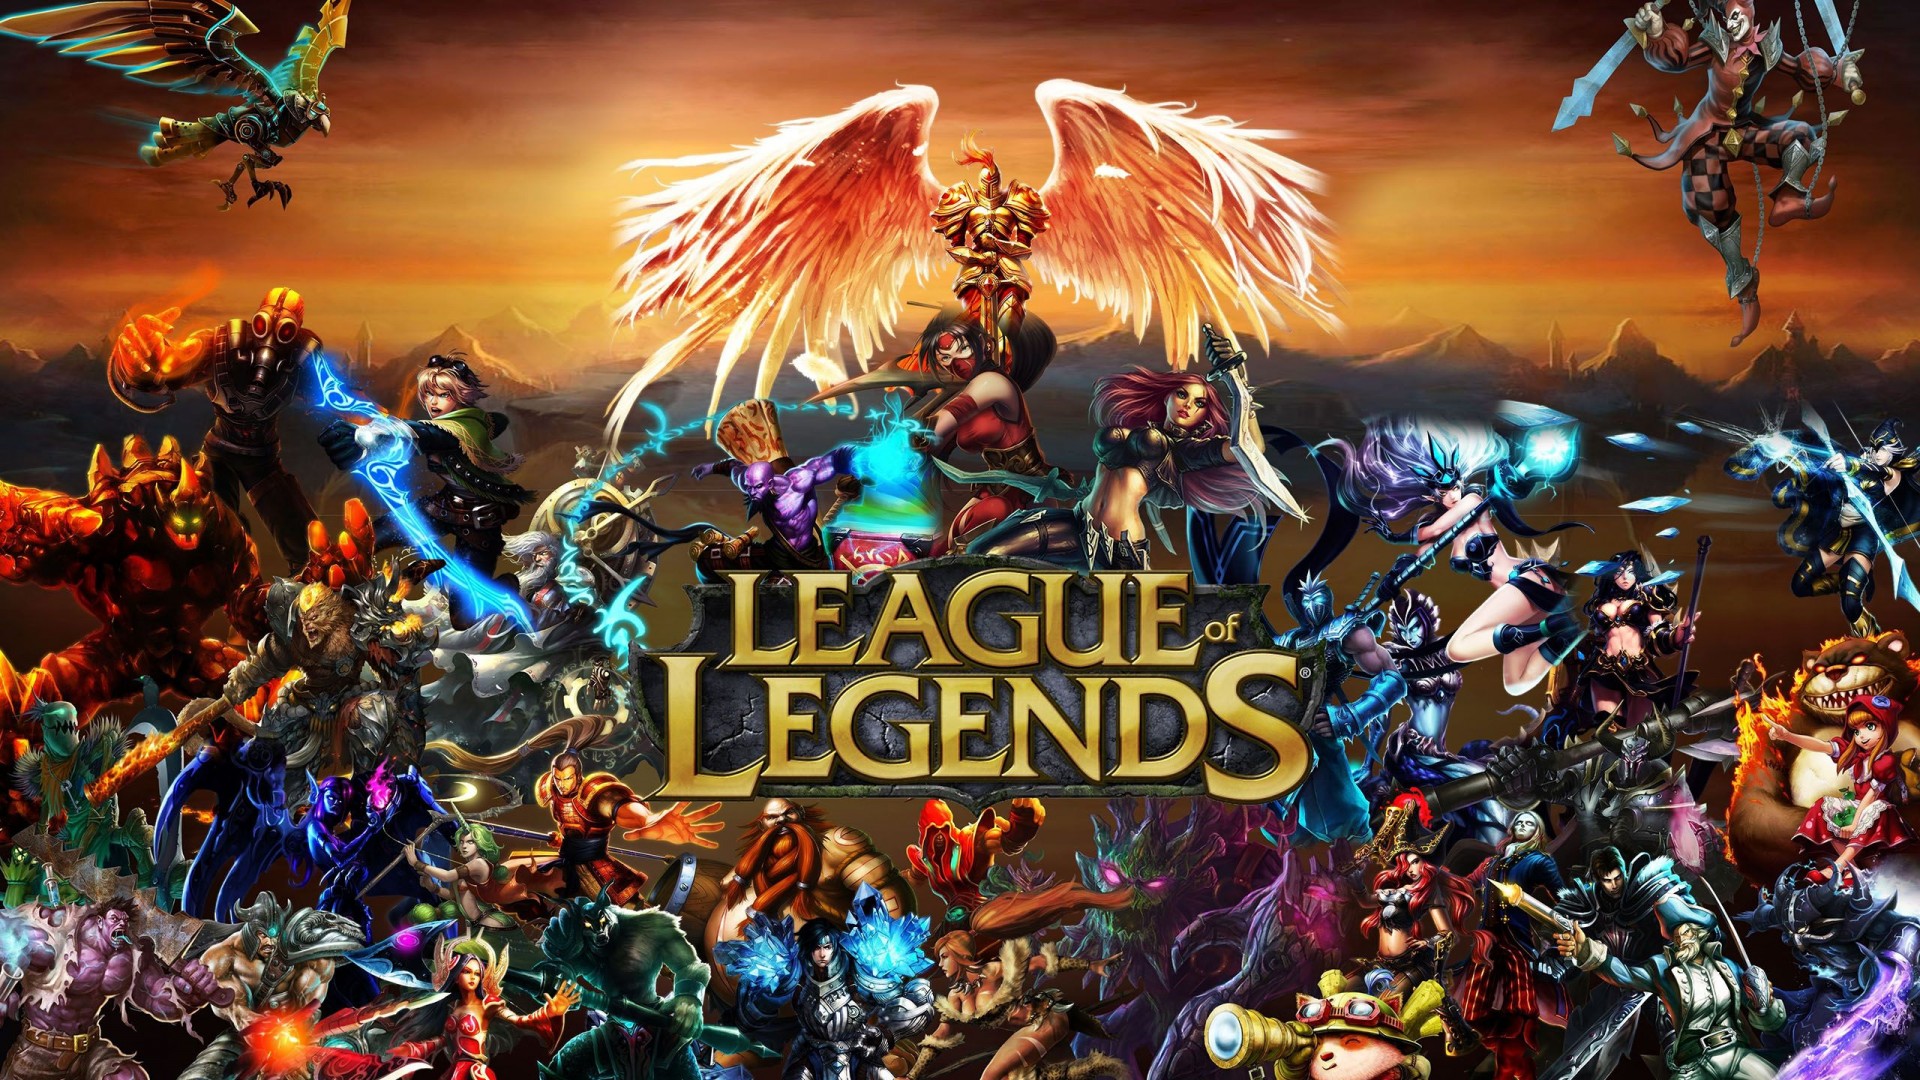 league of legends pic 5 - Analisis de League of Legends